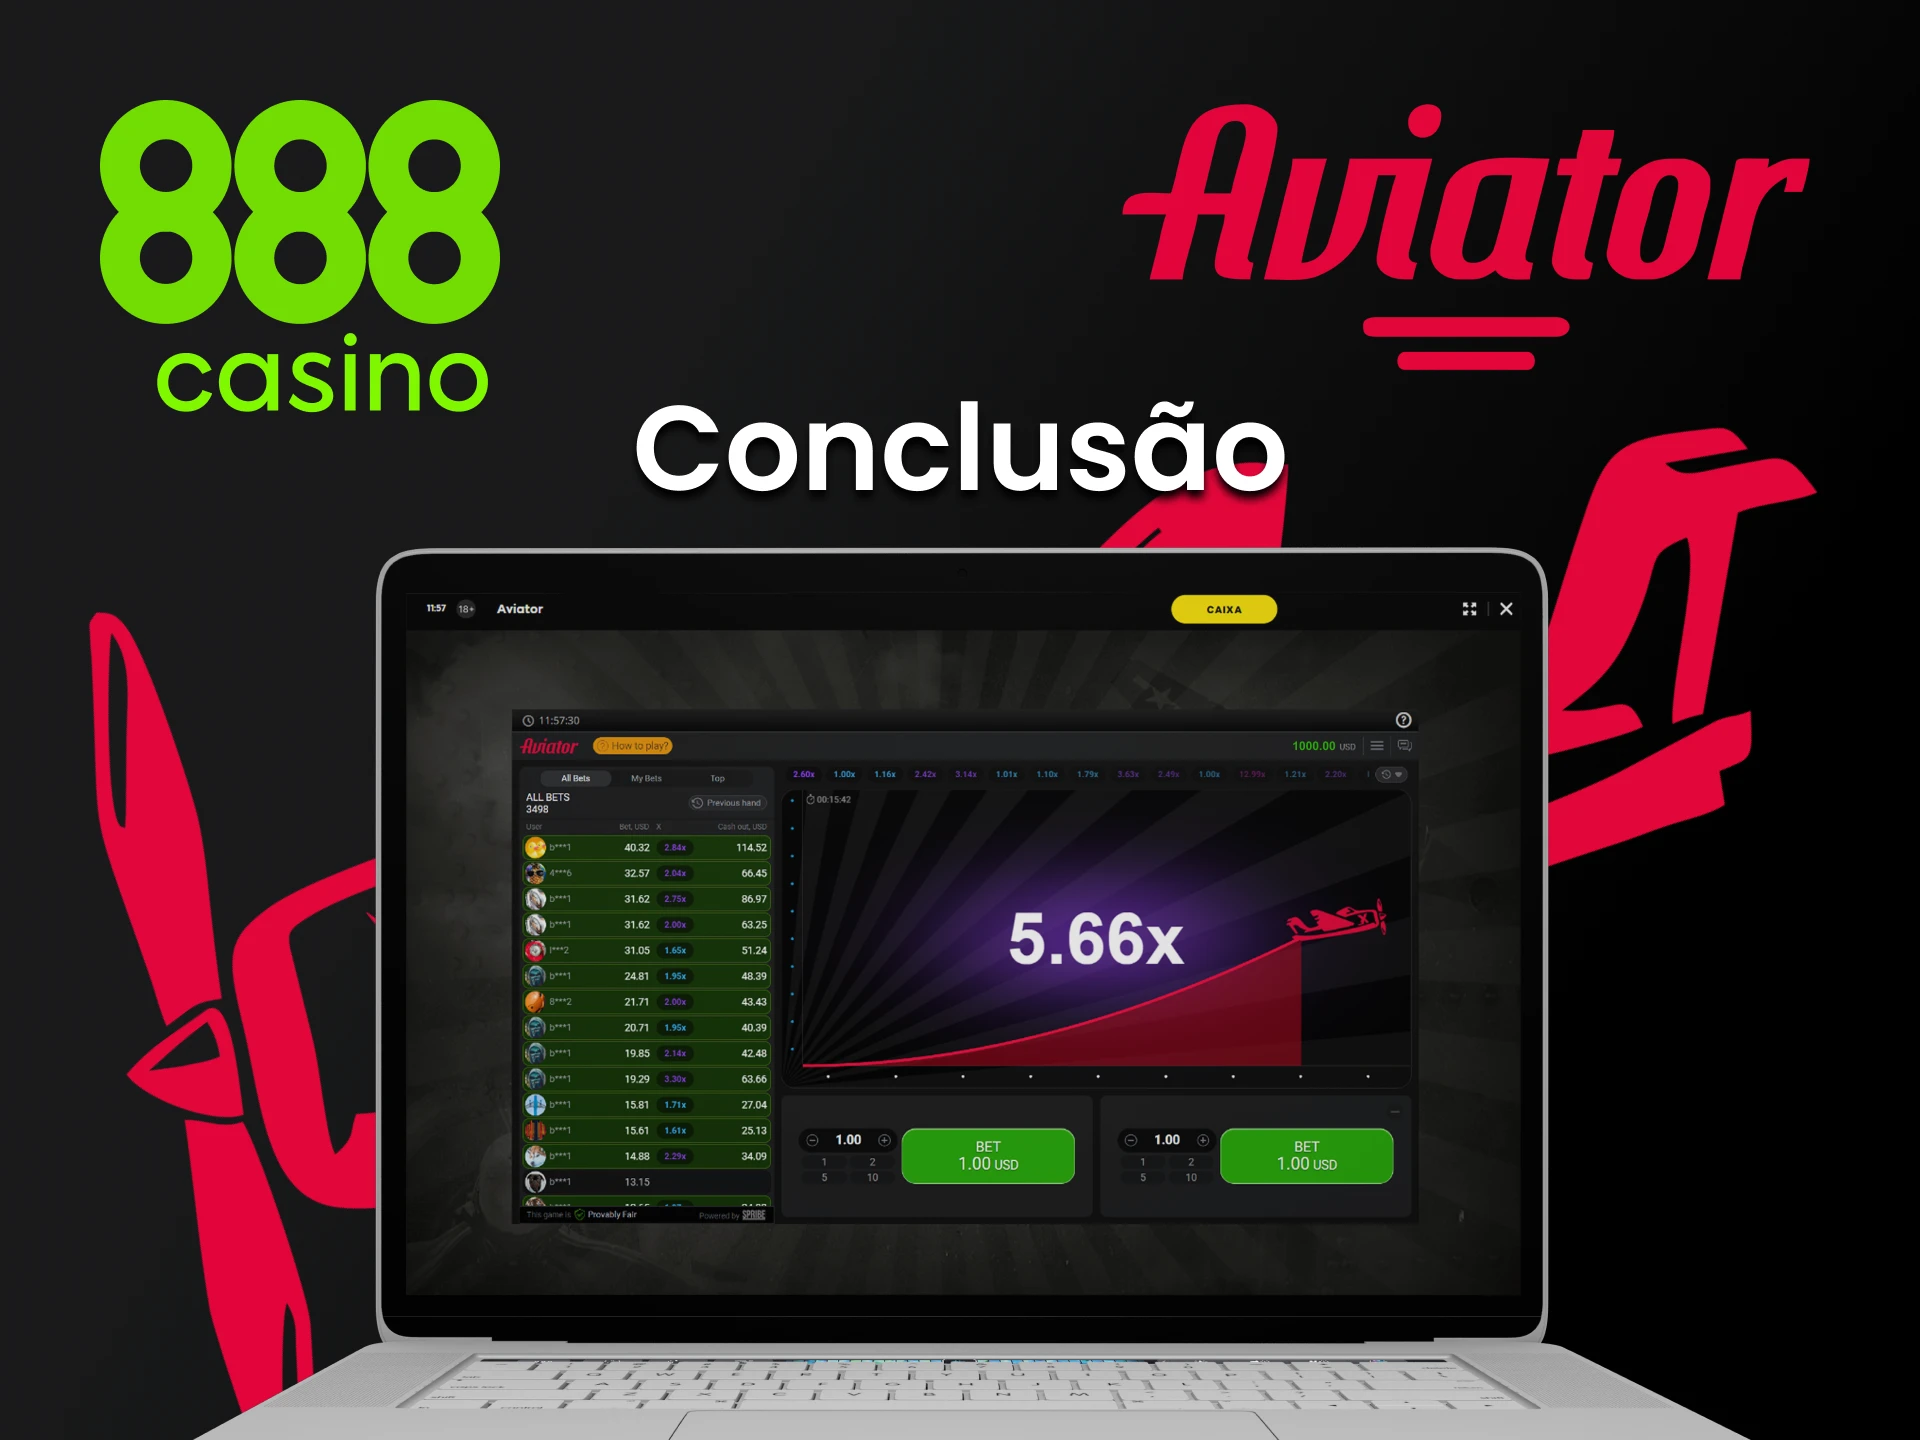 O 888 casino é a melhor plataforma para jogar Aviator.